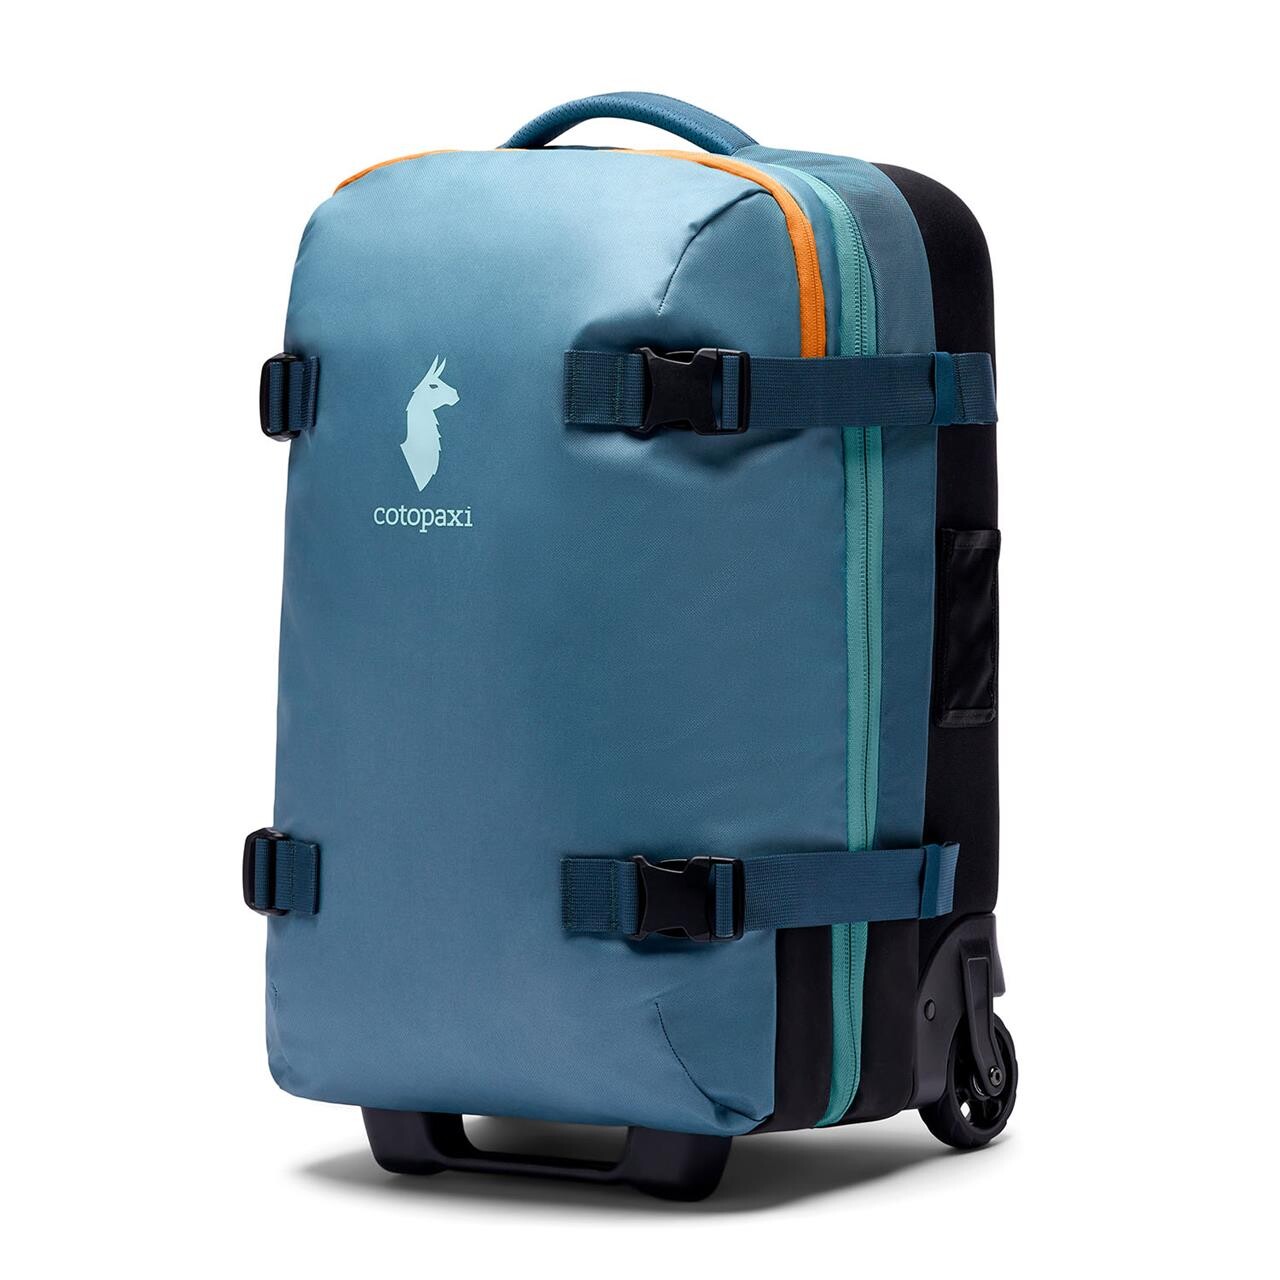 Cotopaxi Allpa 38l Roller Bag (Blå (BLUE SPRUCE) ONE SIZE)